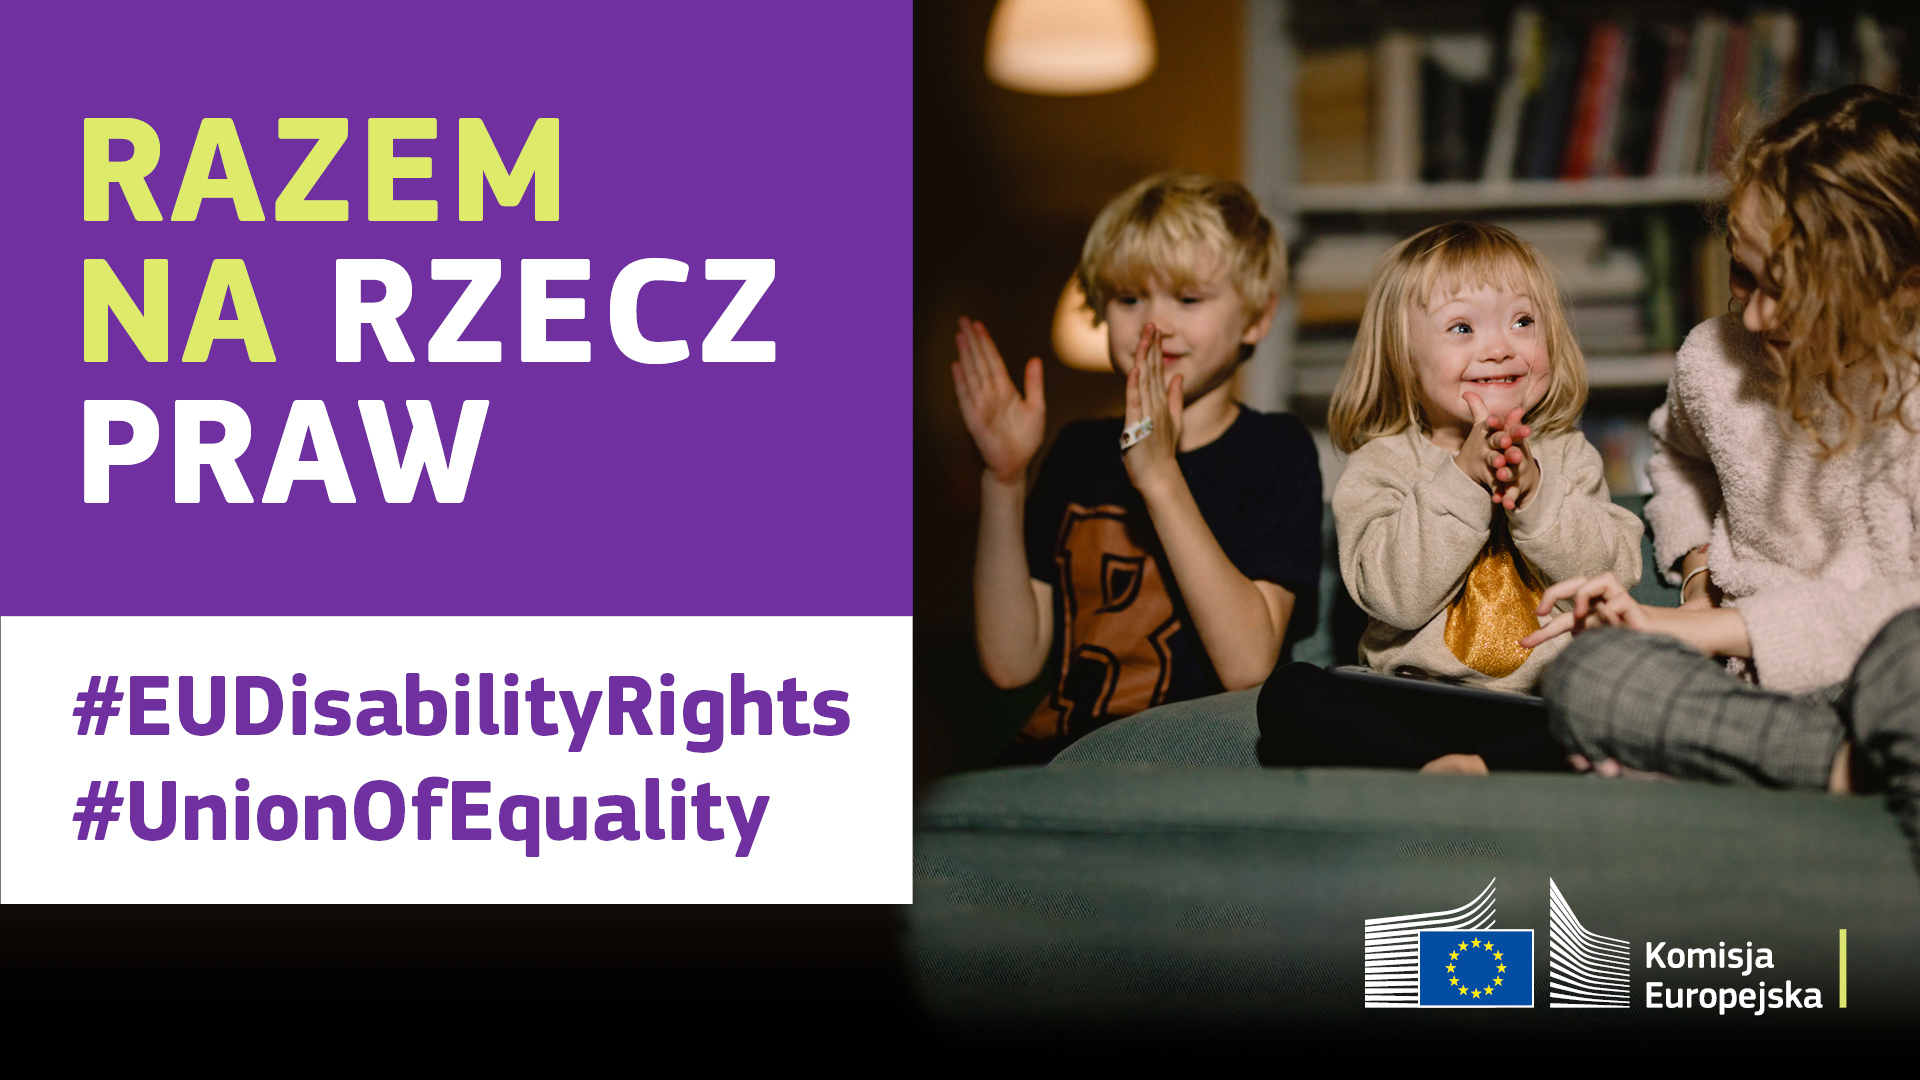 Trójka dzieci wesoło spędza czas na wspólnej zabawie. Jedno z nich ma zespół Downa. Napis o treści: razem na rzecz praw, #EUDisabilityRights, #UnionOfEquality.